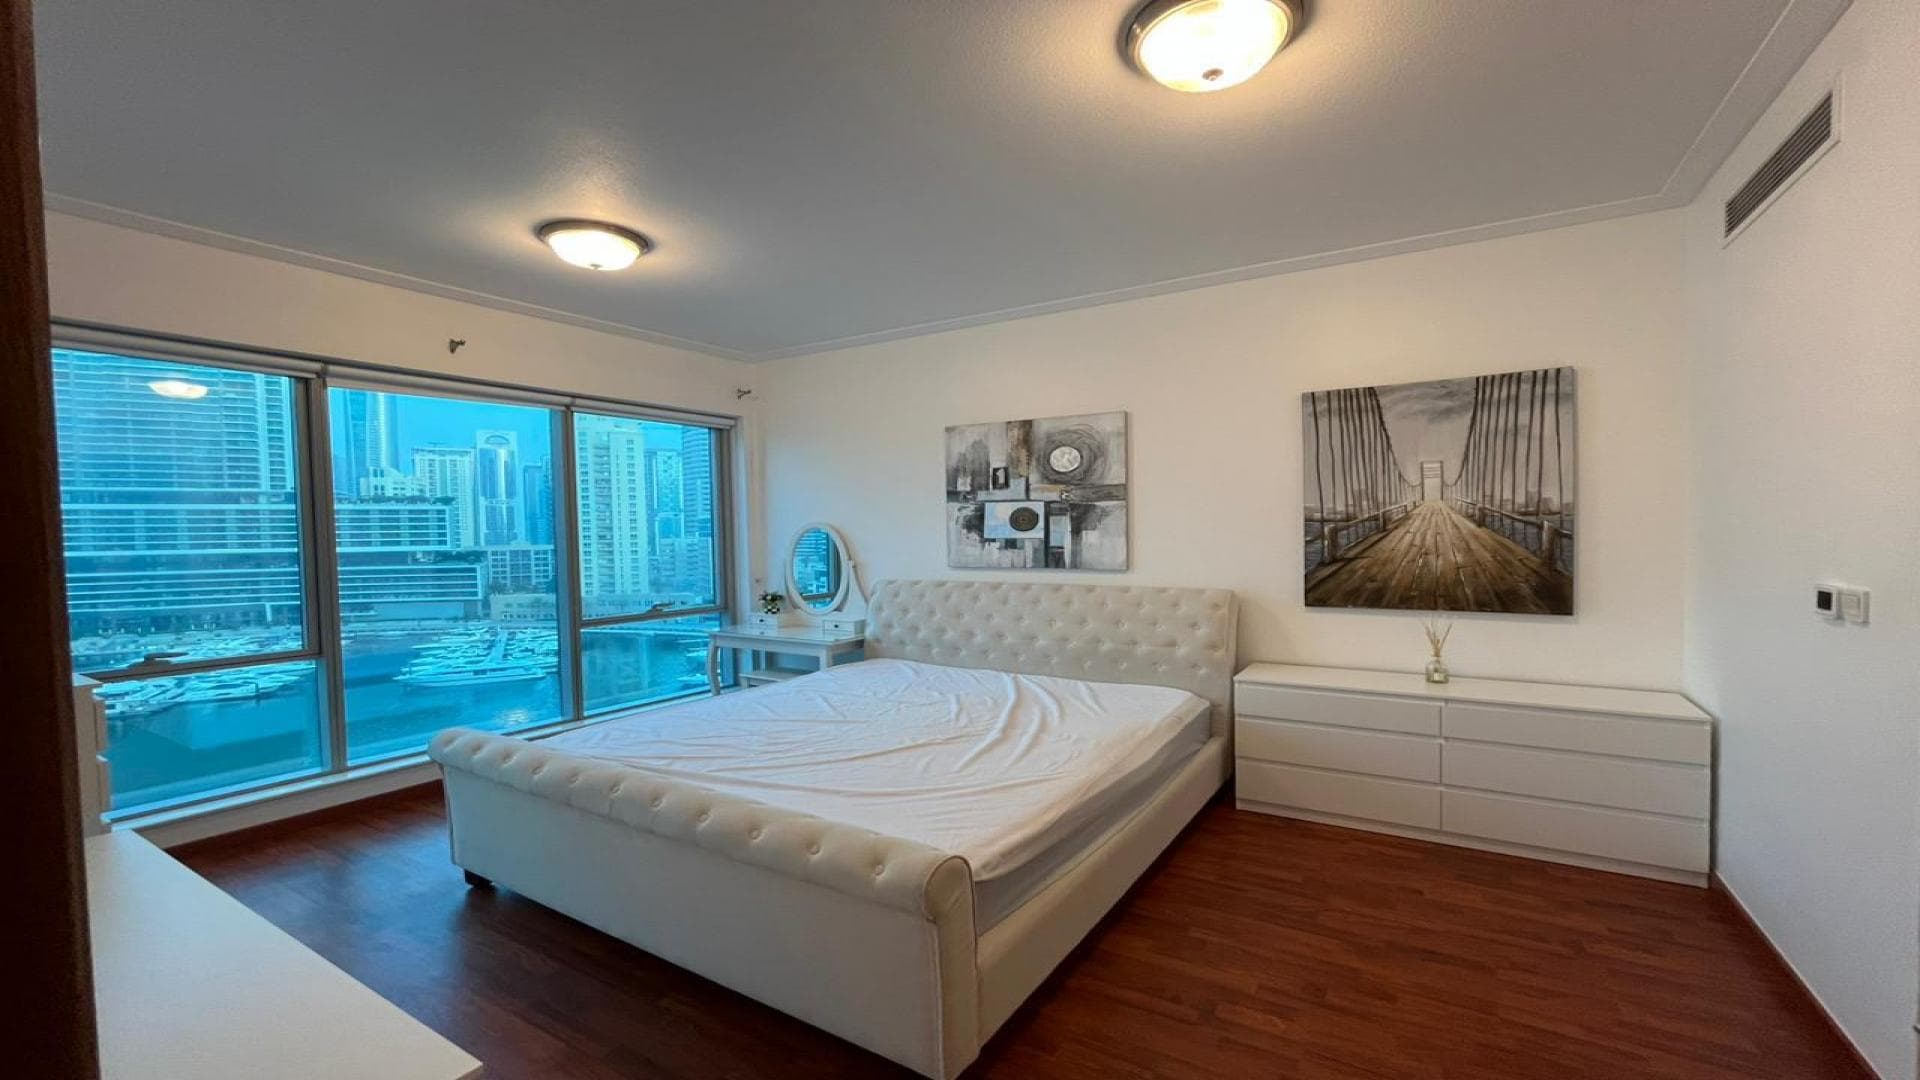 2 Bedroom Apartment For Rent Goldcrest Views 1 Lp36831 1fcdd23d4c1b6600.jpeg